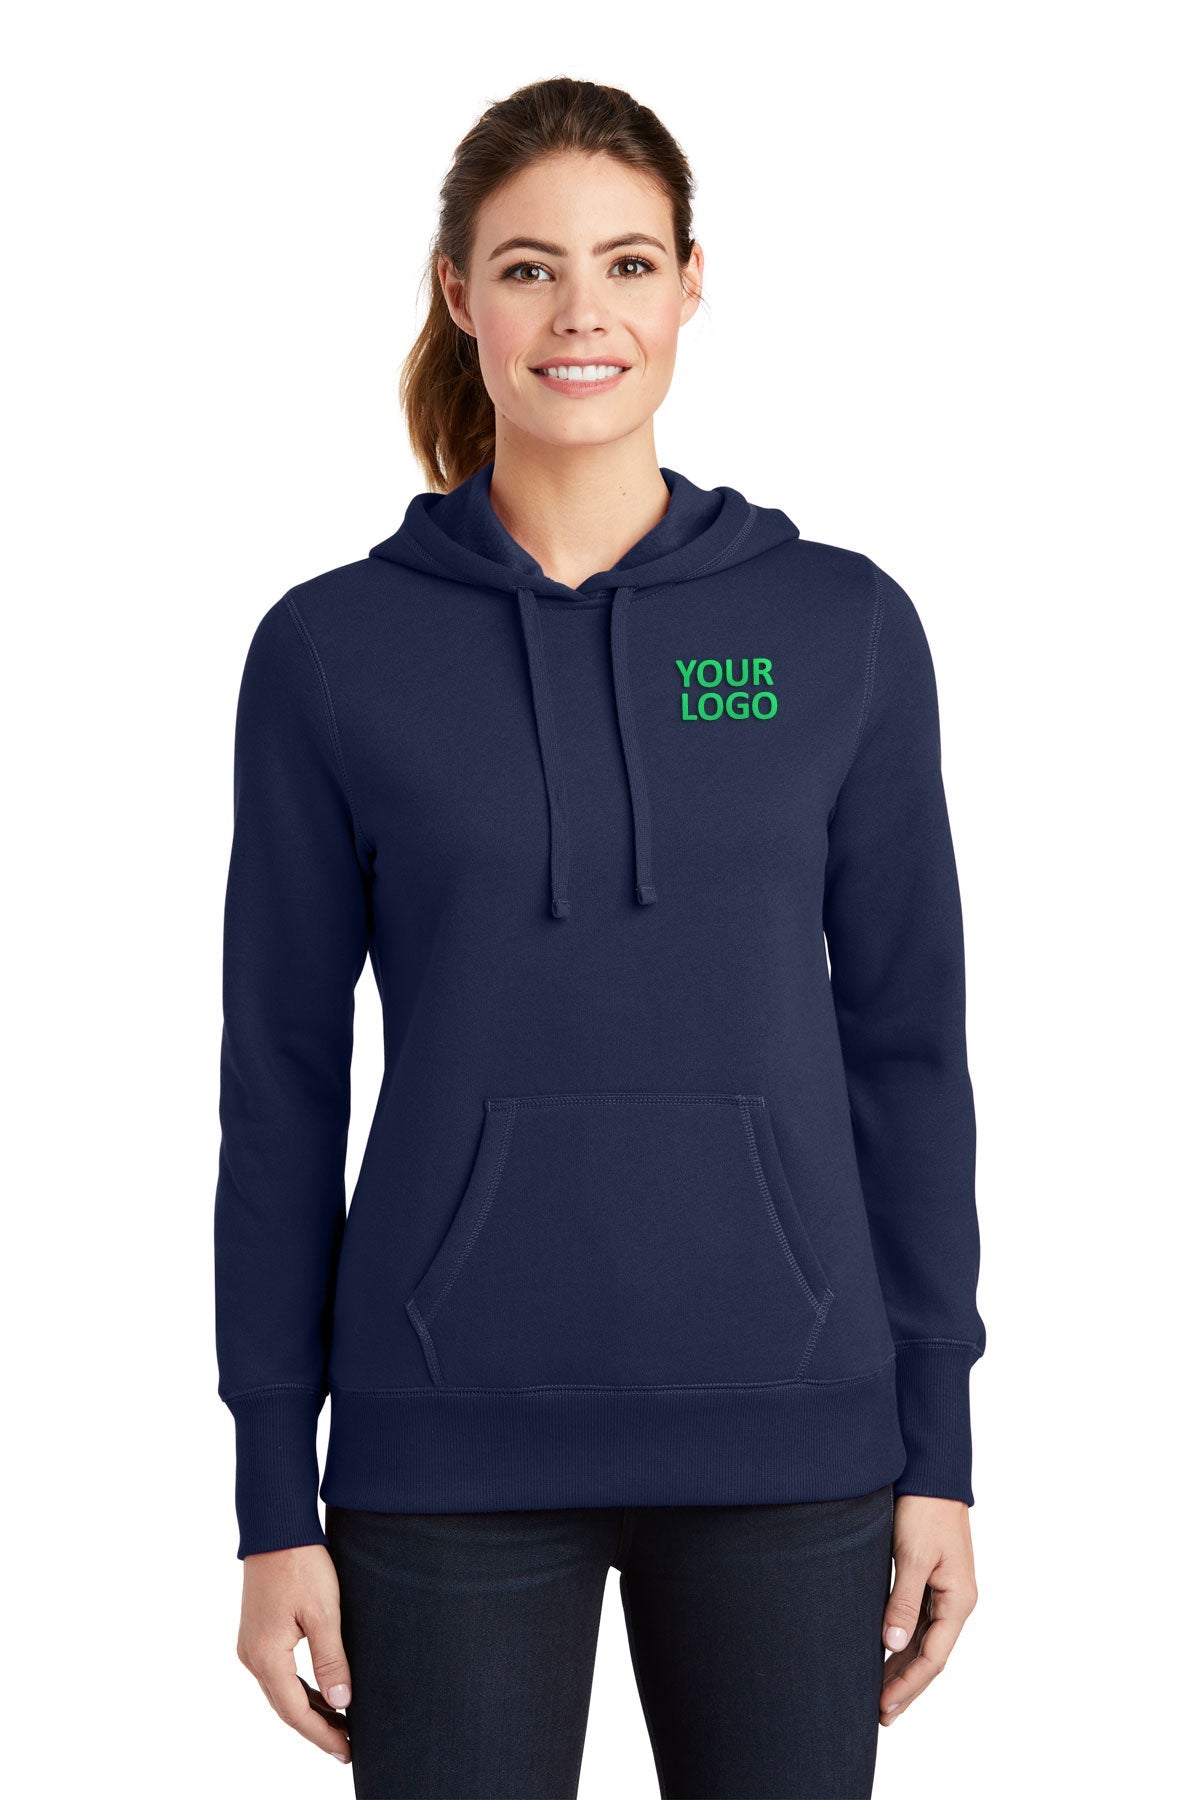 Sport-Tek Ladies Pullover Custom Hooded Sweatshirts, True Navy